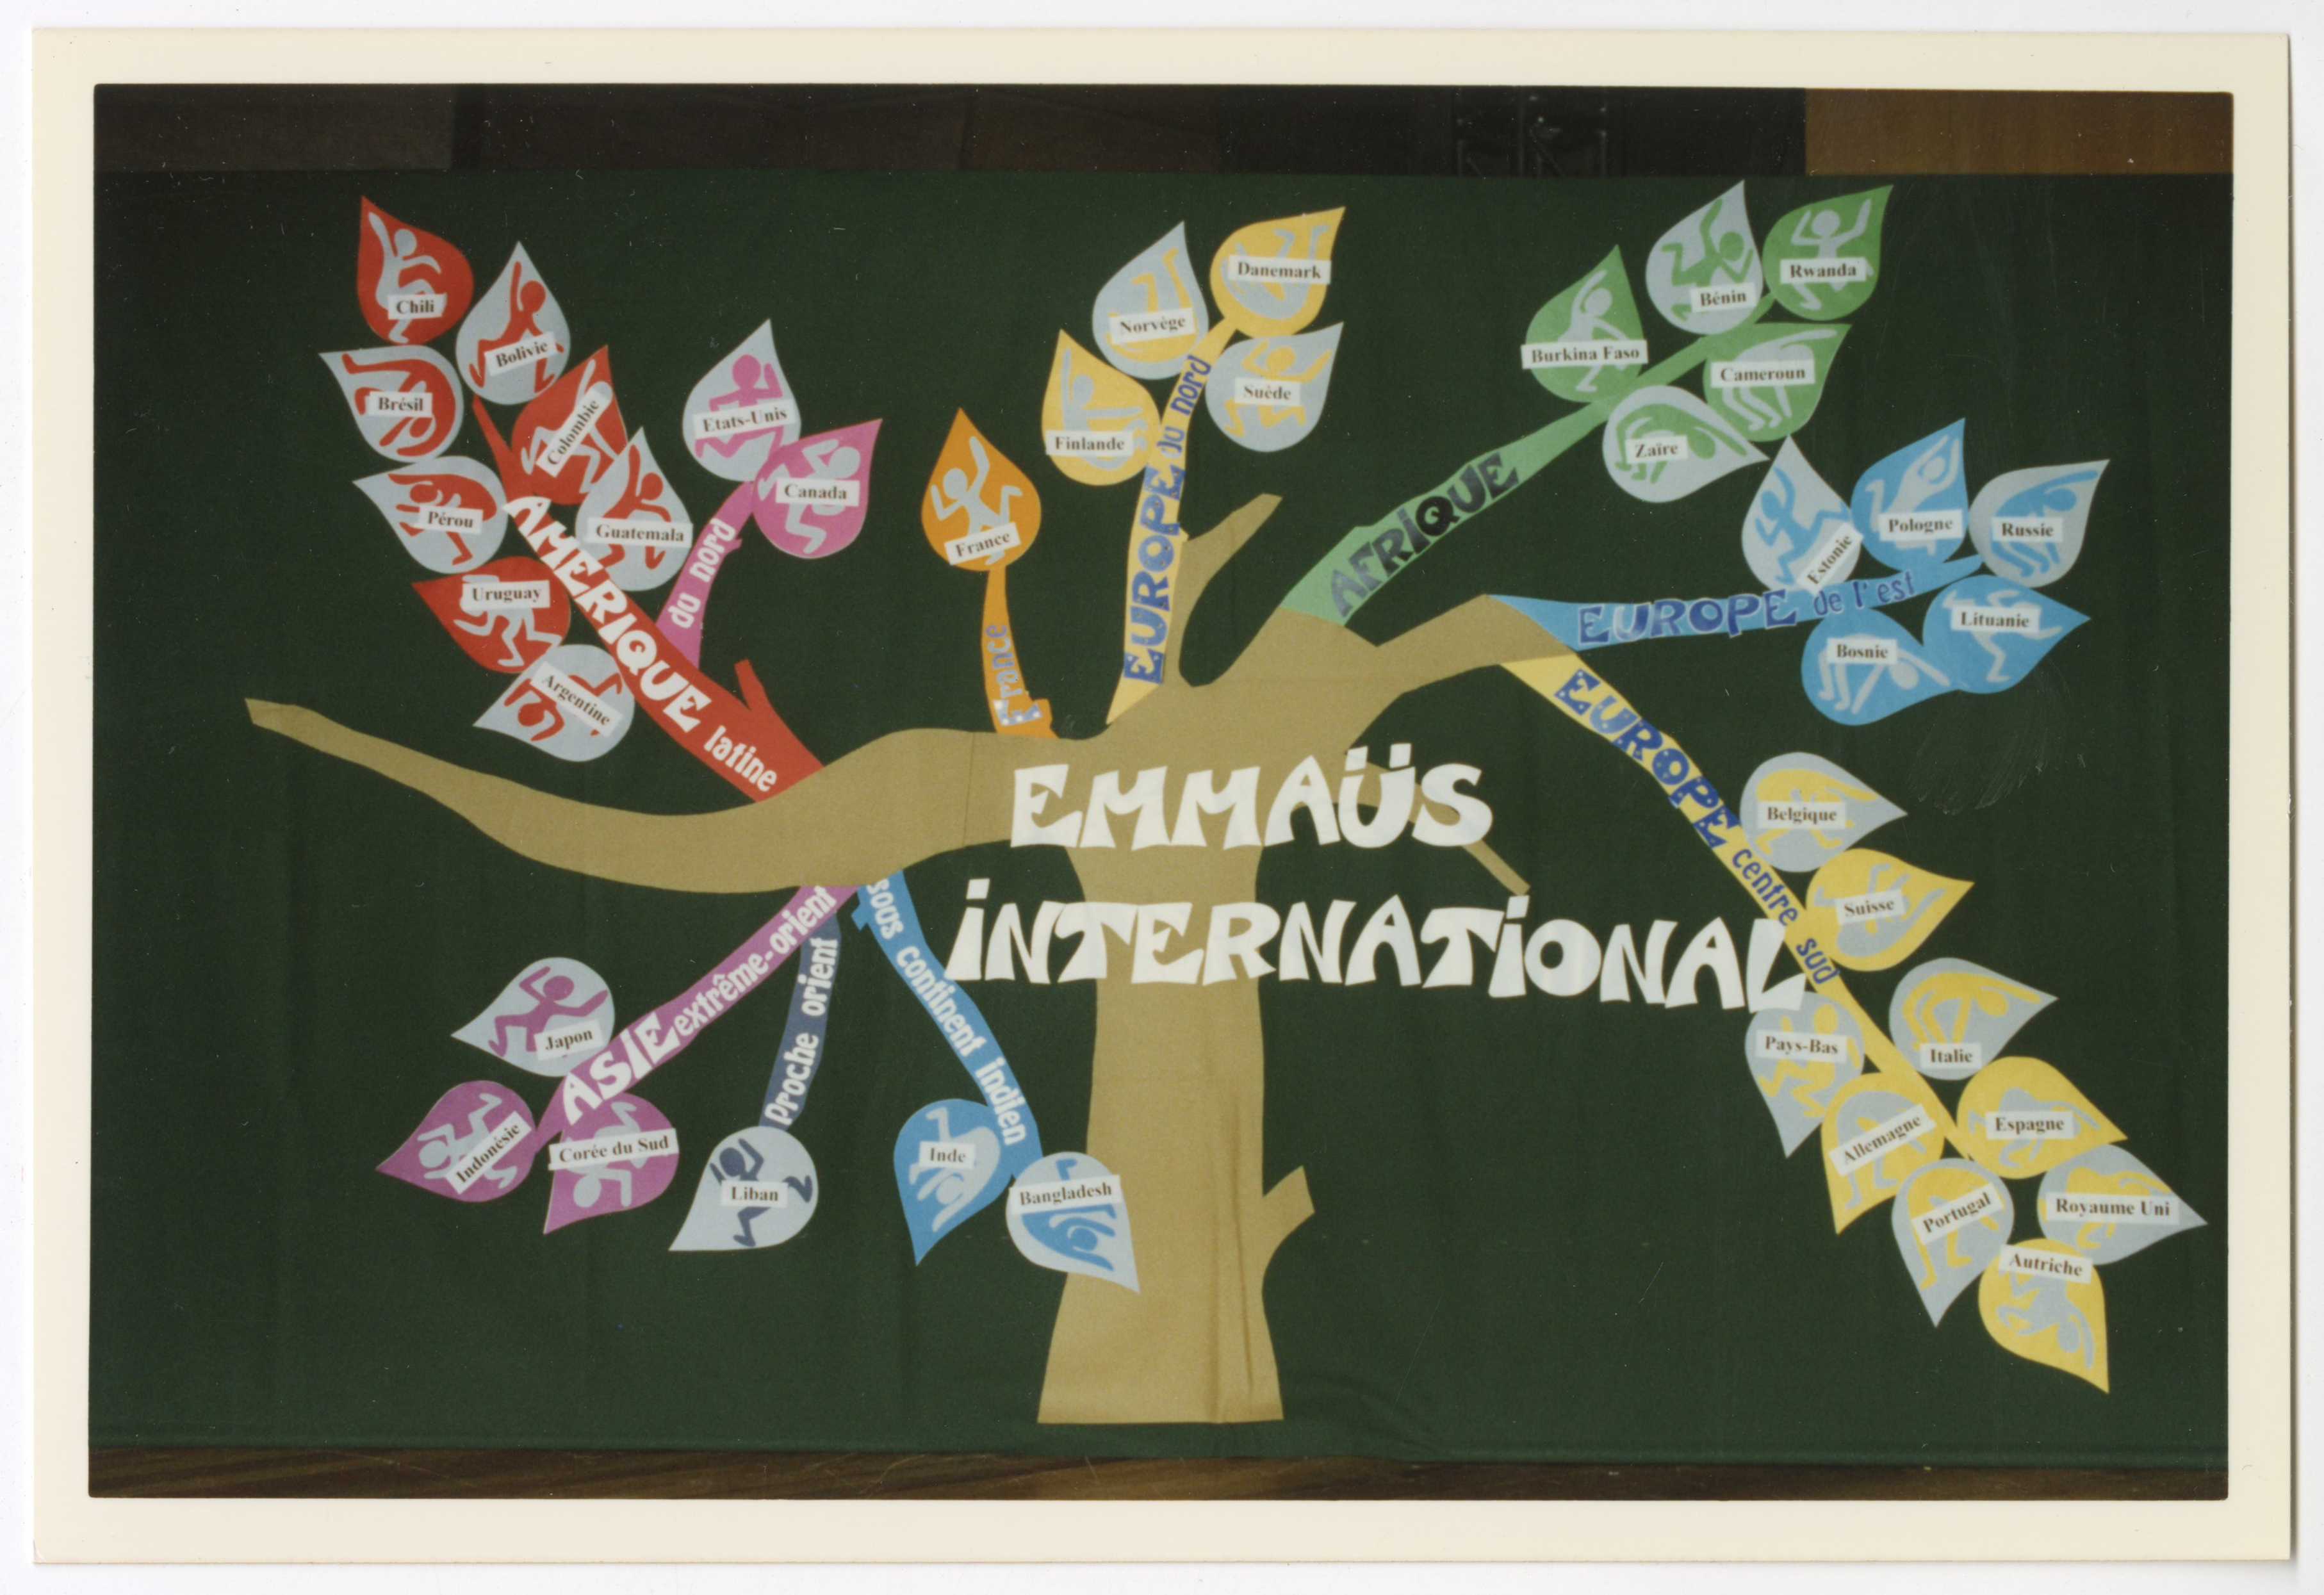 Photographie d'une oeuvre réalisée par une des participantes à l'assemblée, représentant chaque groupe présent par une feuille d'arbre, 1996.